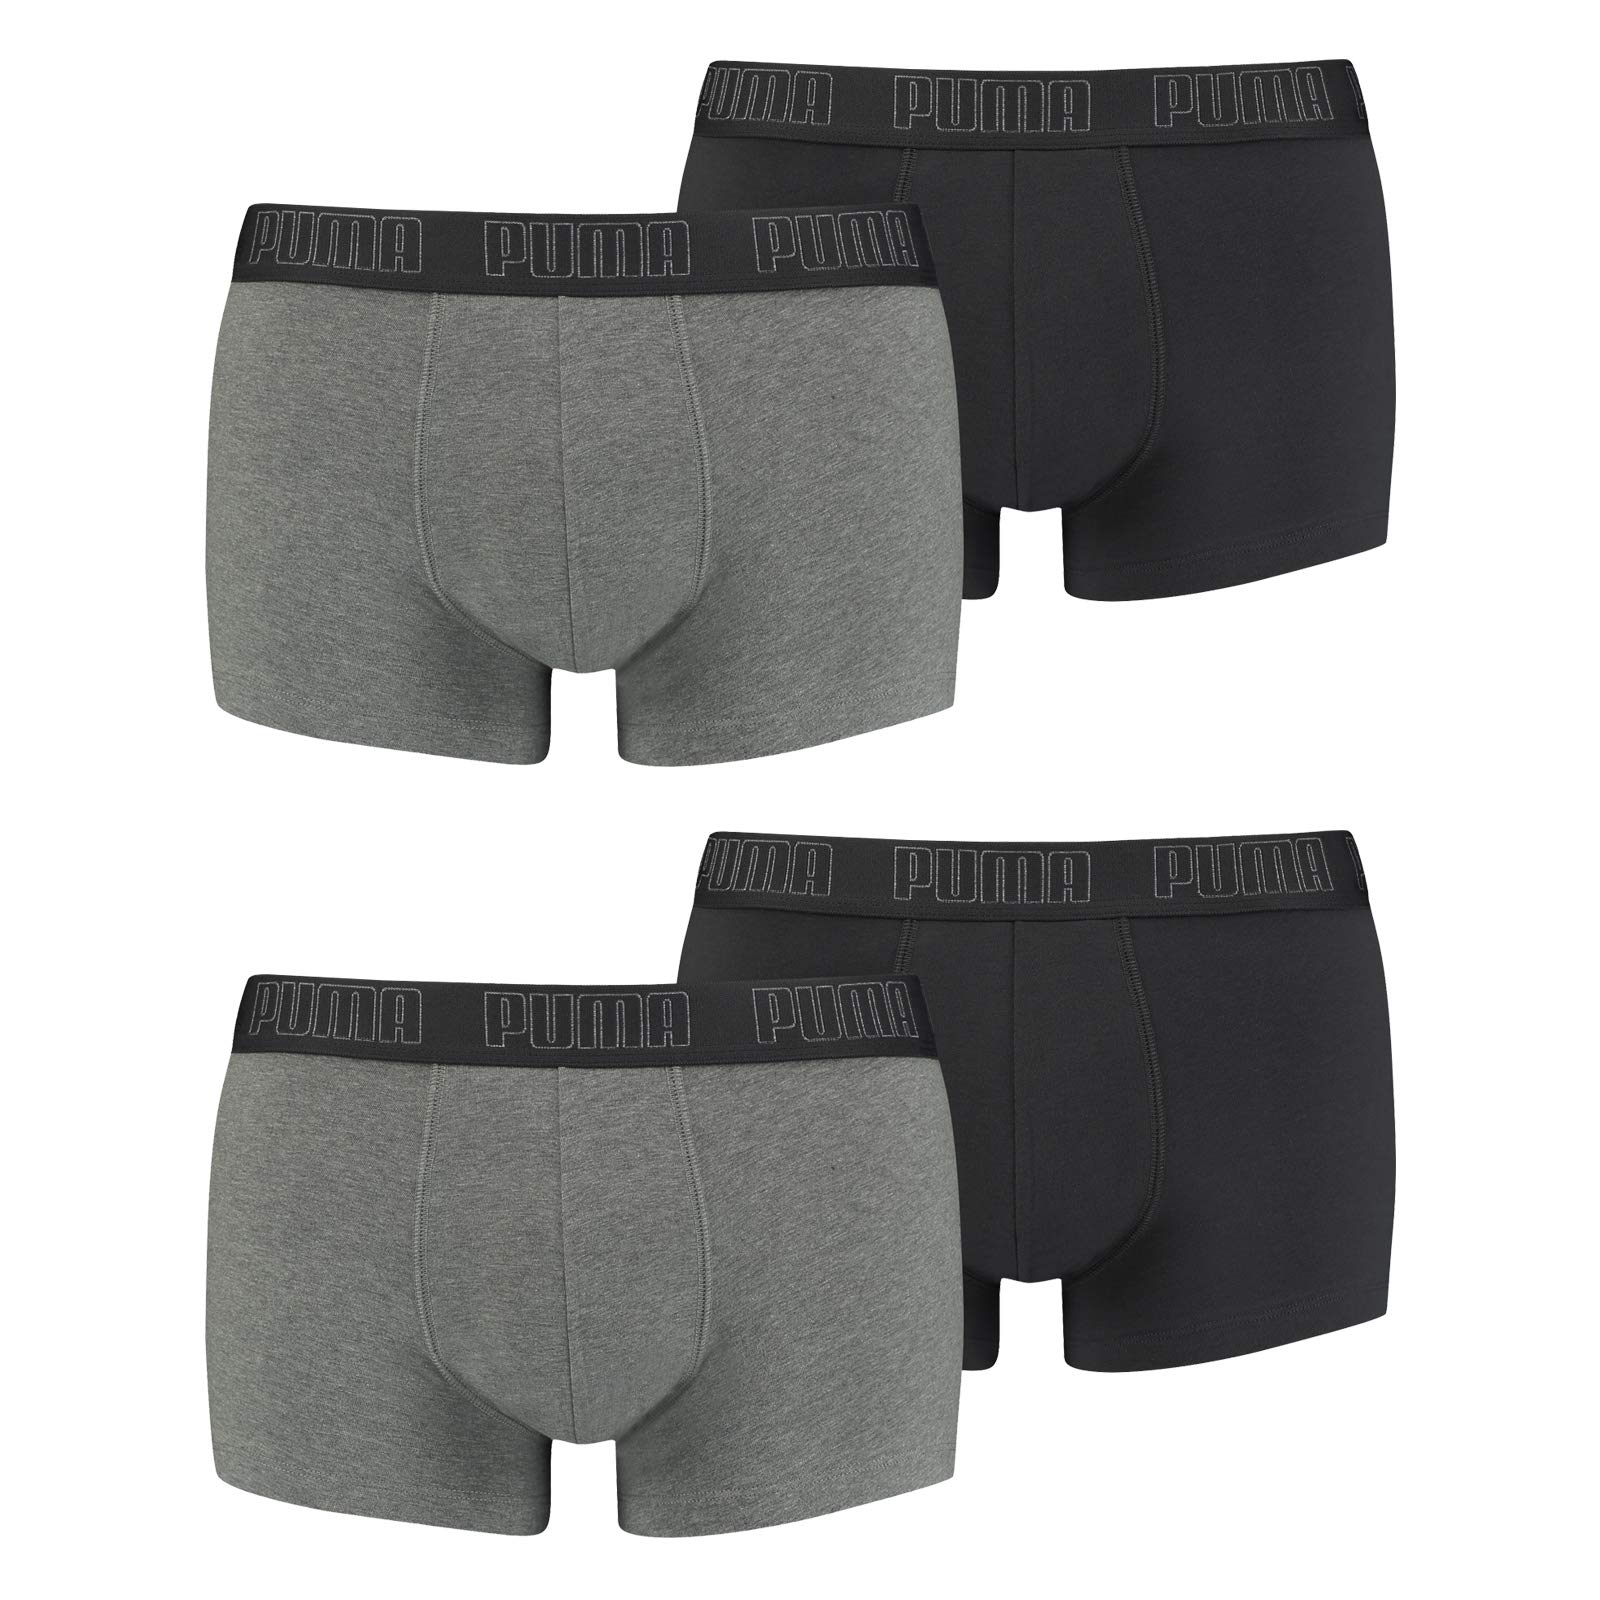 PUMA Herren Shortboxer Unterhosen Trunks 4er Pack, Wäschegröße:L, Artikel:-008 Dark Grey Melange/Black